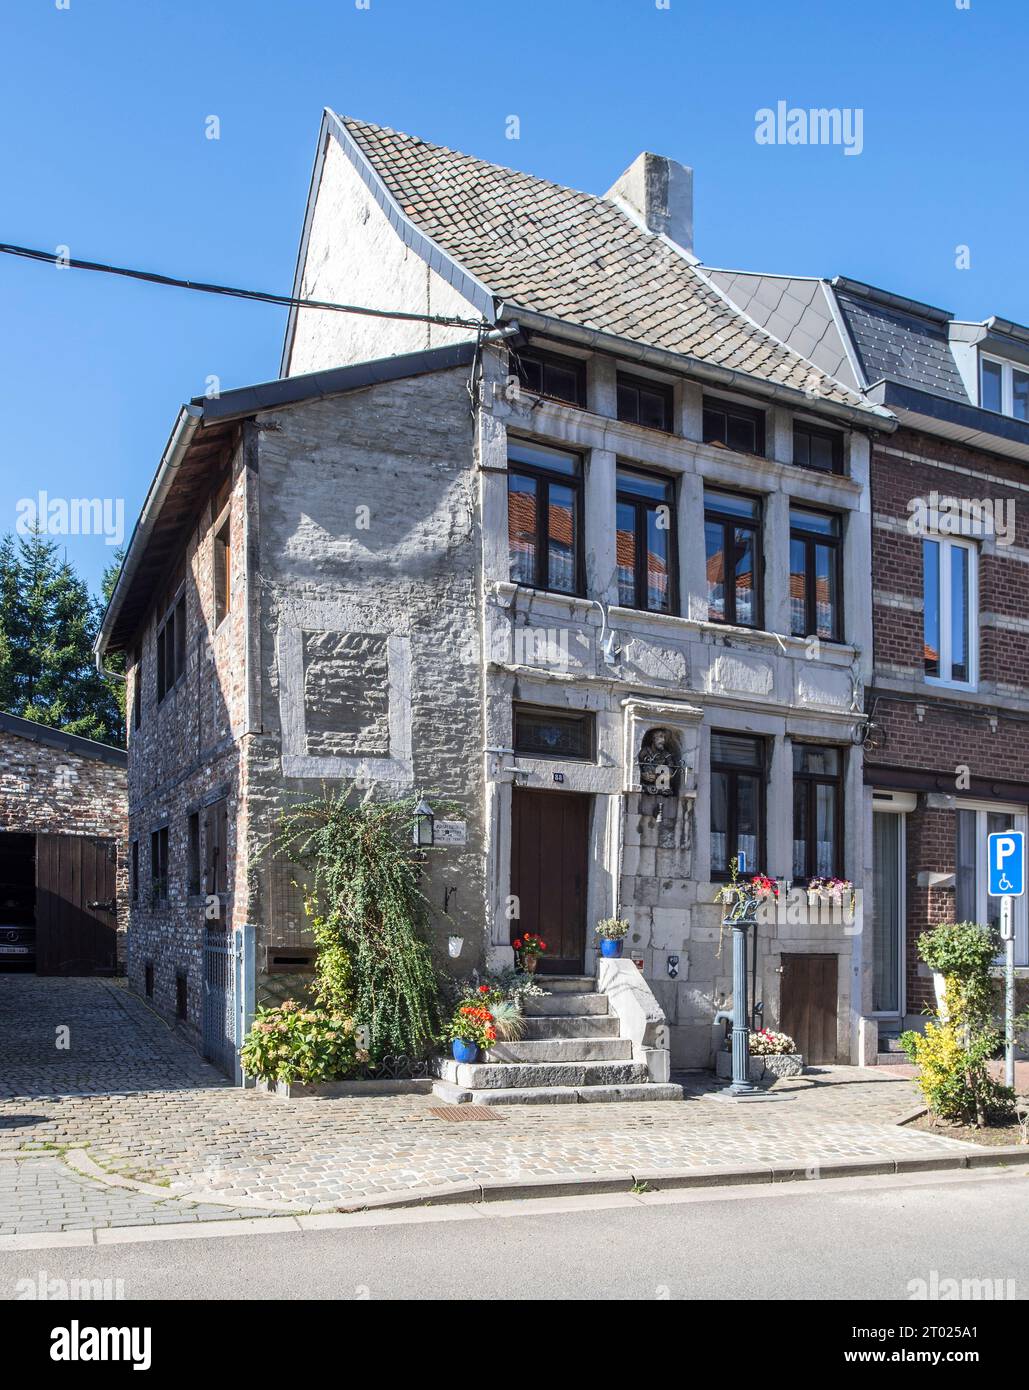 Maison du Père extérieur / Maison du VI bon Dju, maison du 18e siècle dans le centre historique de Hervé dans la province de Liège, Wallonie, Belgique Banque D'Images